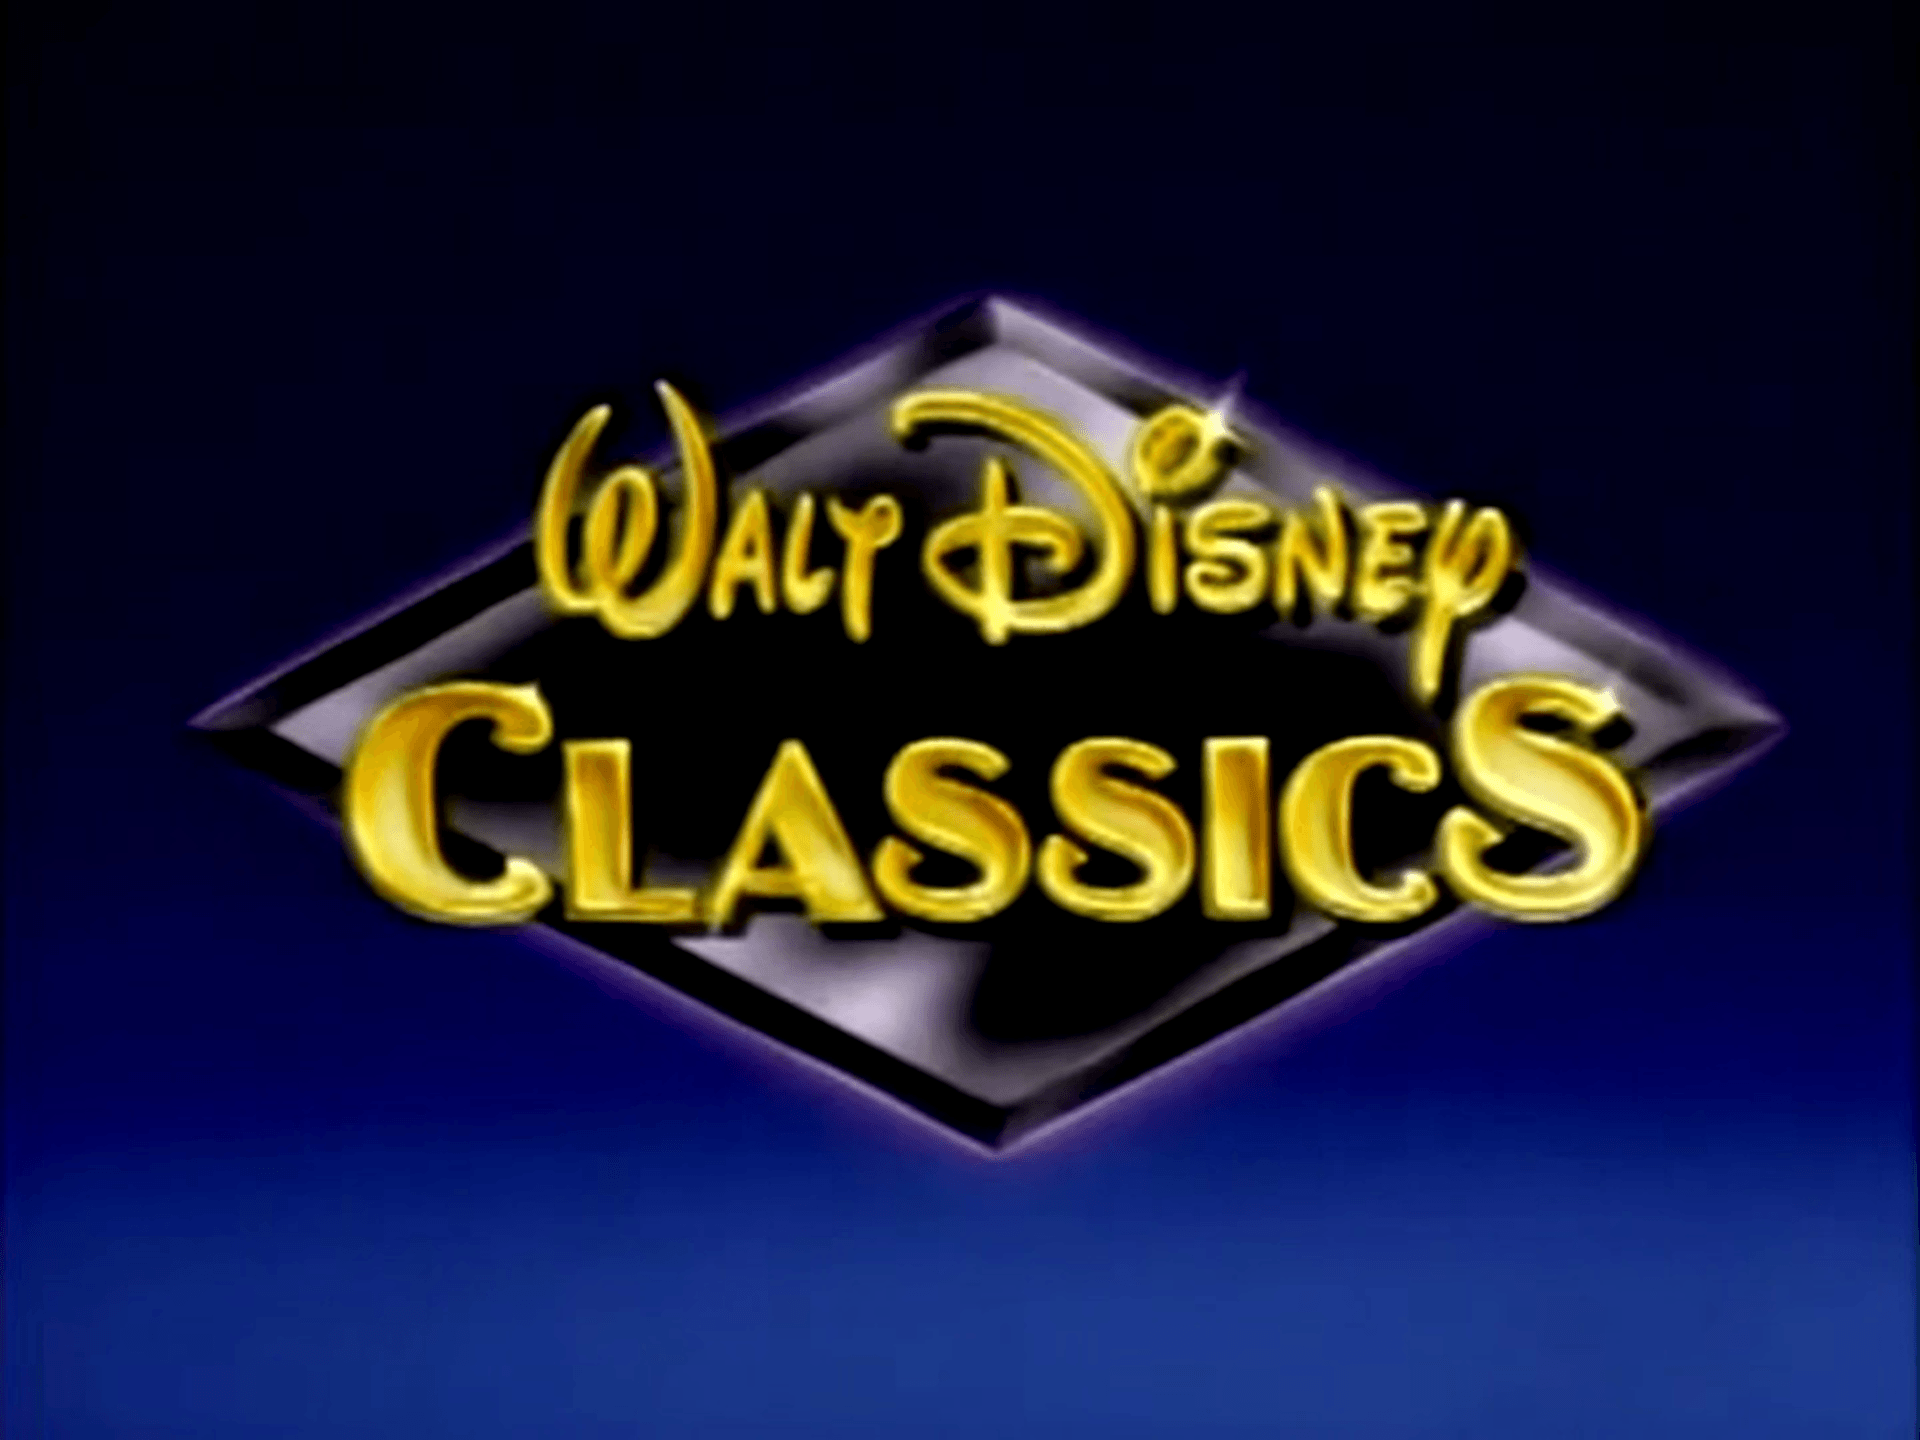 Walt Disney Gold Classic Collection Logo - Walt Disney Classics | Disney Wiki | FANDOM powered by Wikia